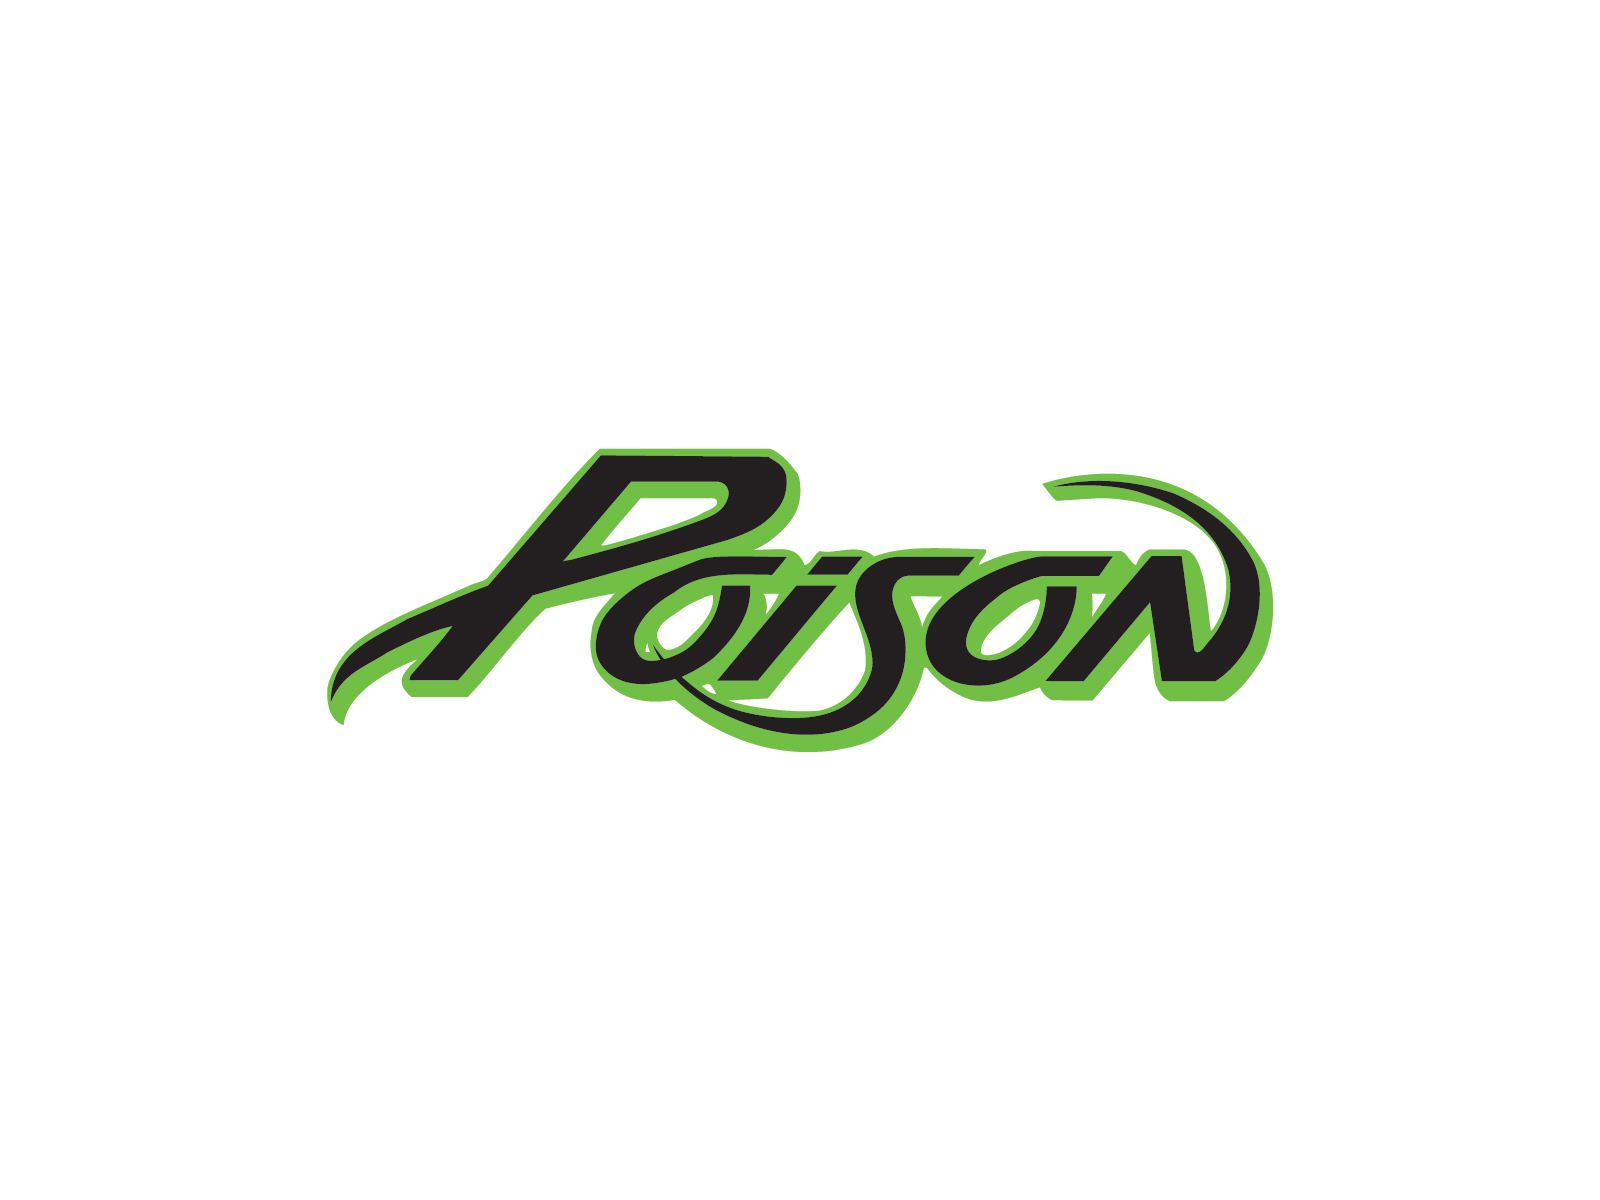 Poison band logo | Band logos - Rock band logos, metal bands logos ...